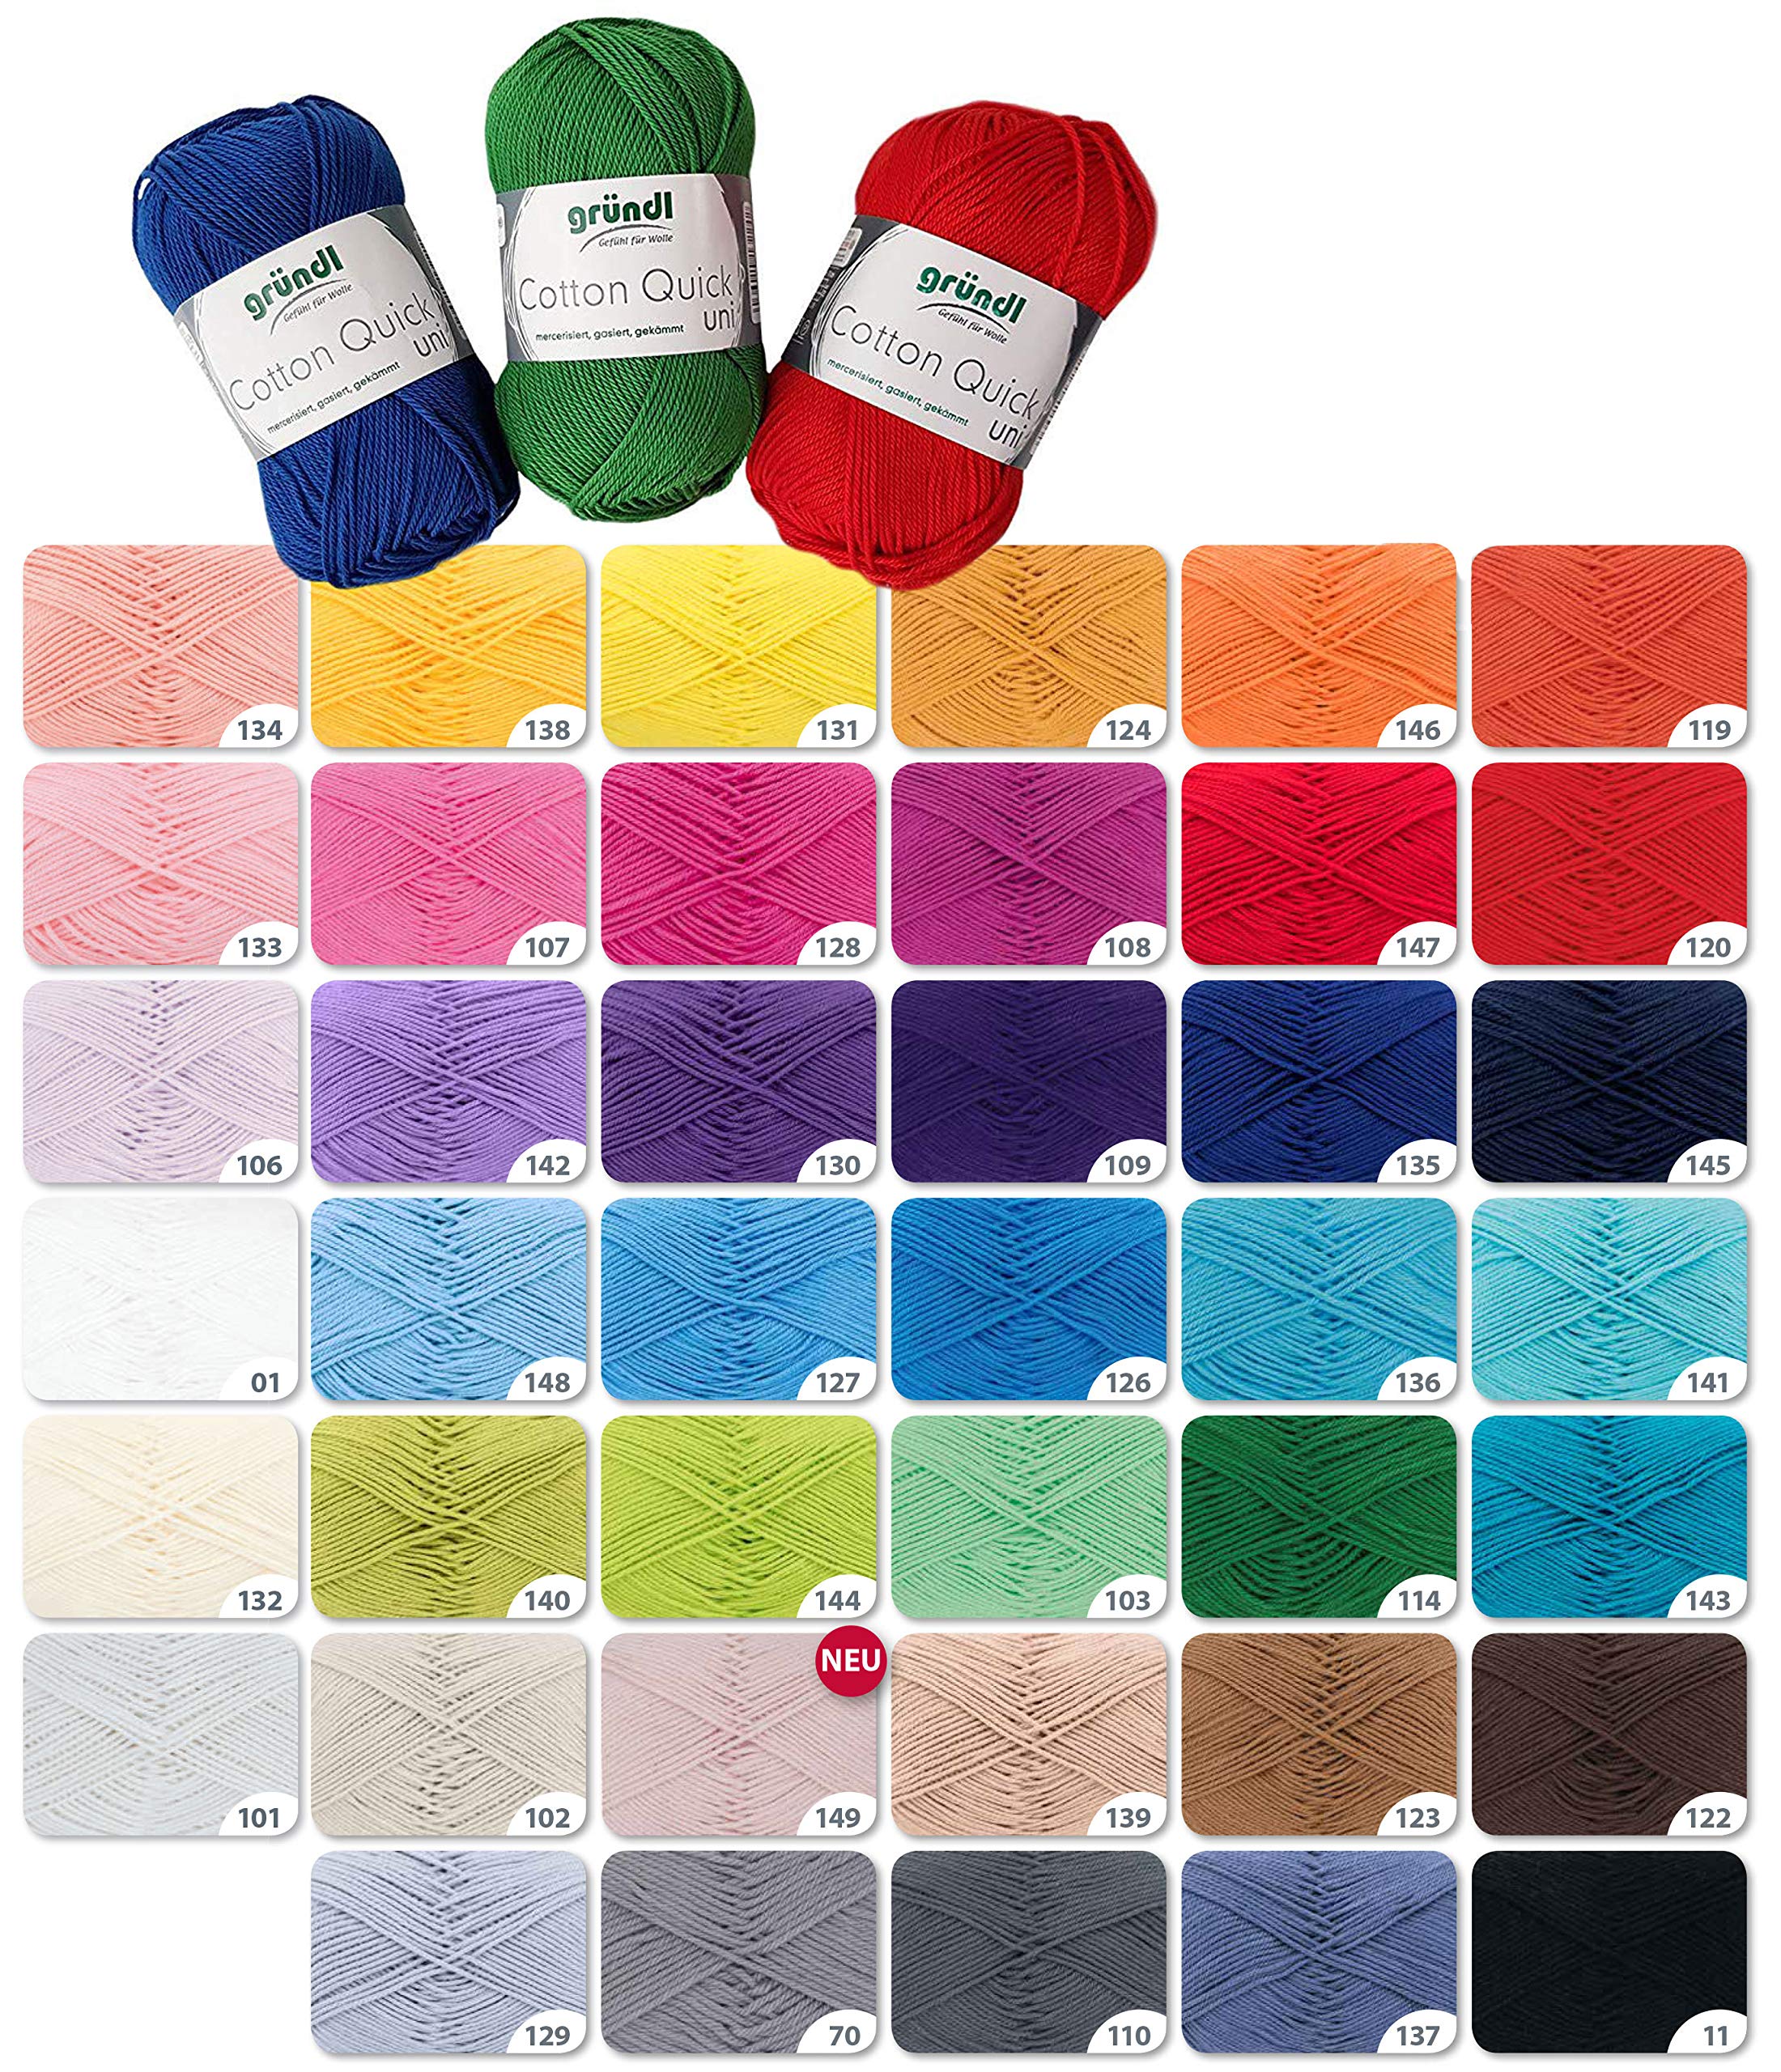 Wollset Gründl Cotton Quick 10x50g keine Farbwahl möglich